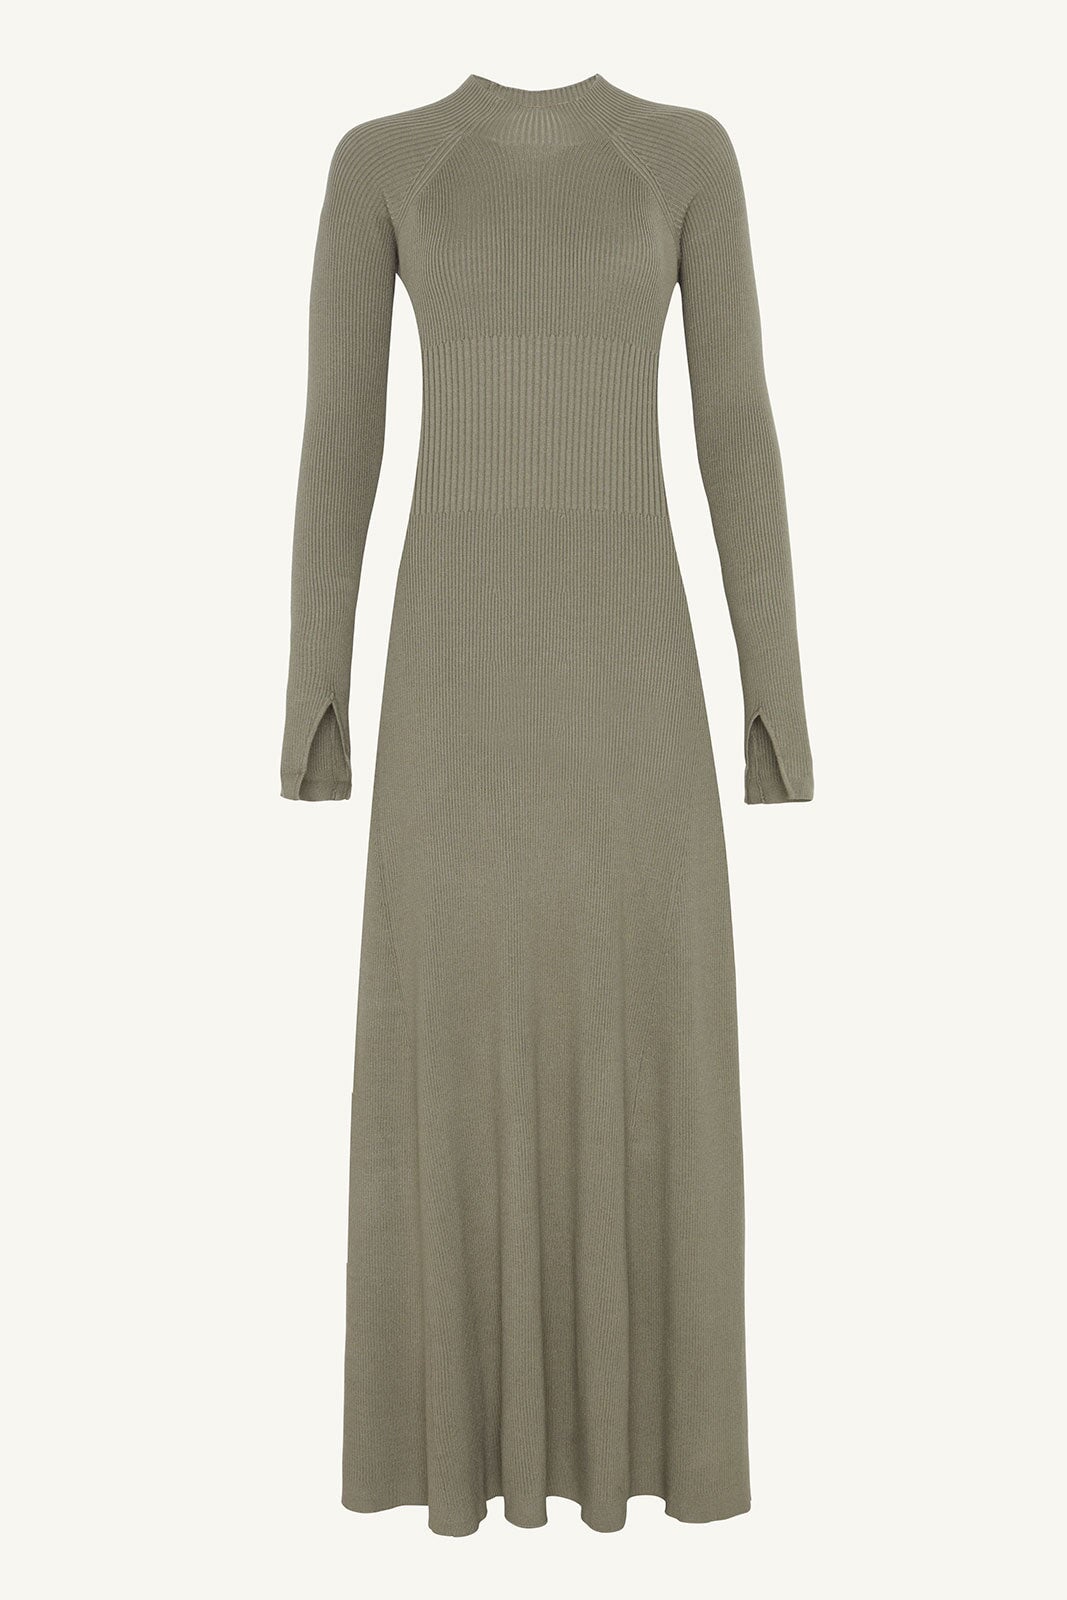 Dalal Knit Ribbed Maxi Dress - Sage Clothing Veiled 